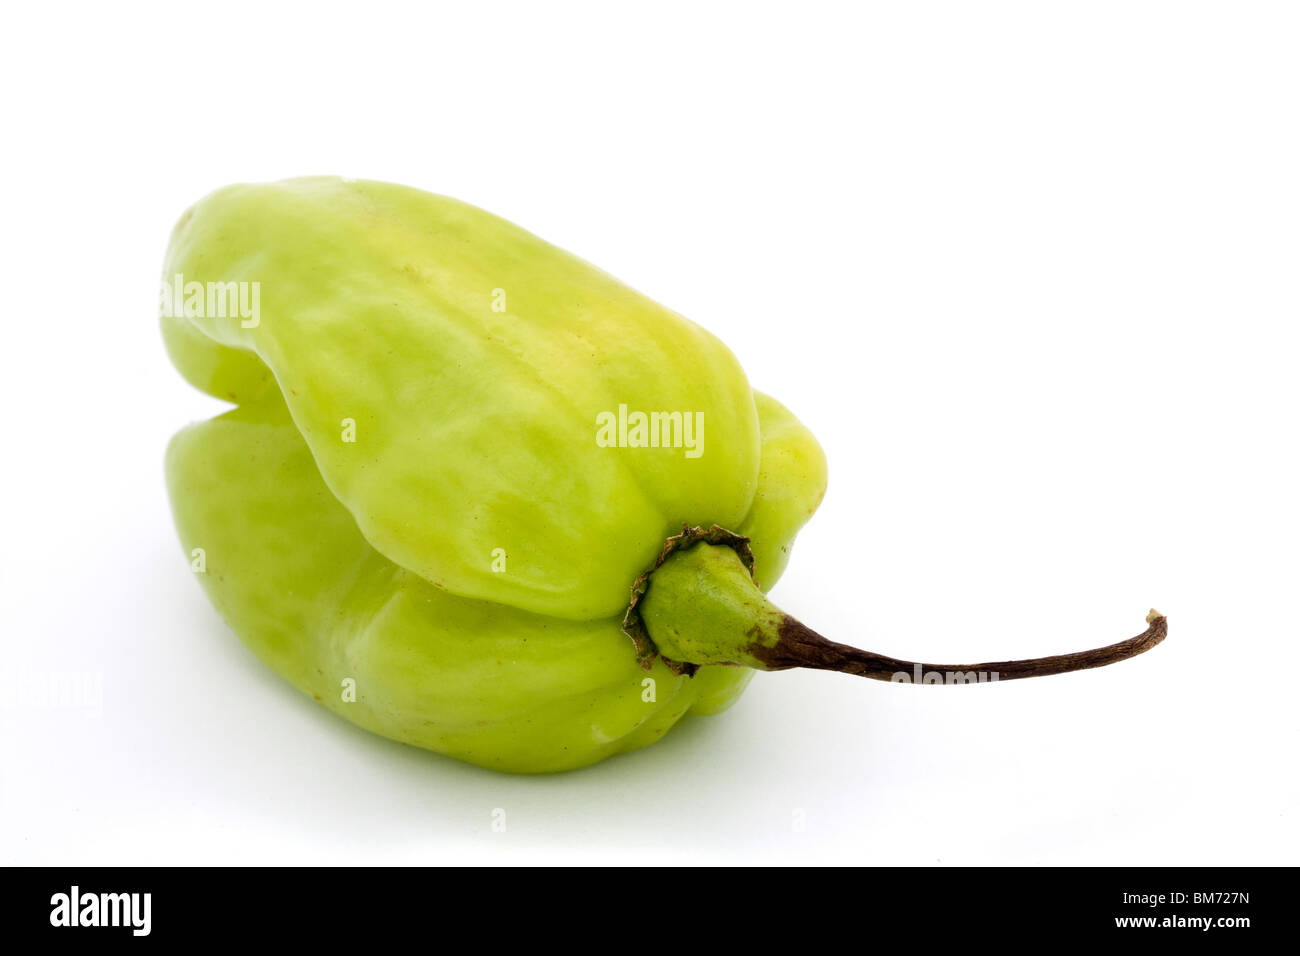 green scotch bonnet chilli pepper over white Stock Photo